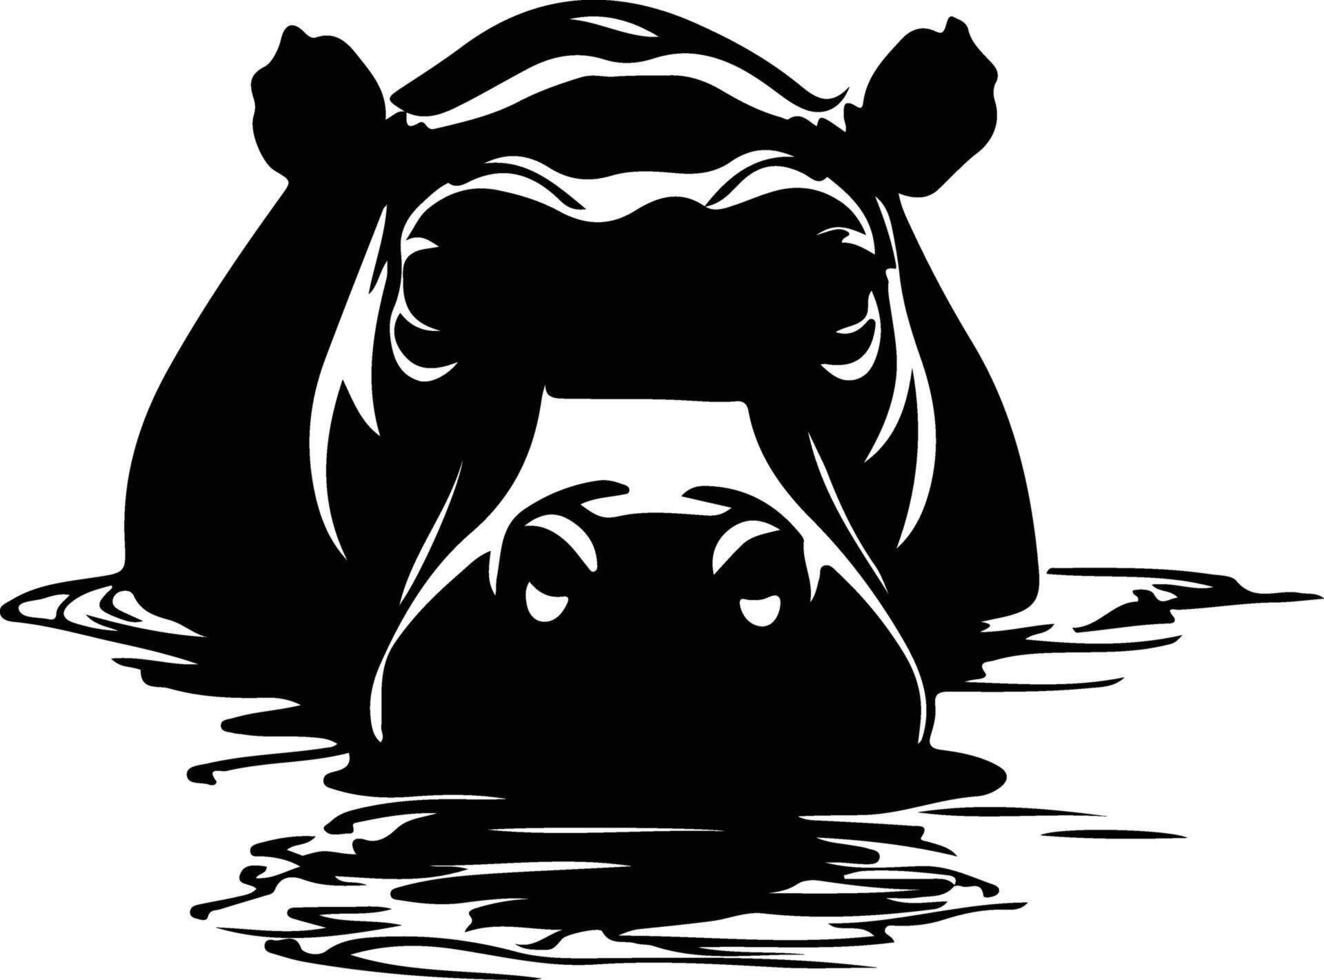 hippopotame noir silhouette vecteur